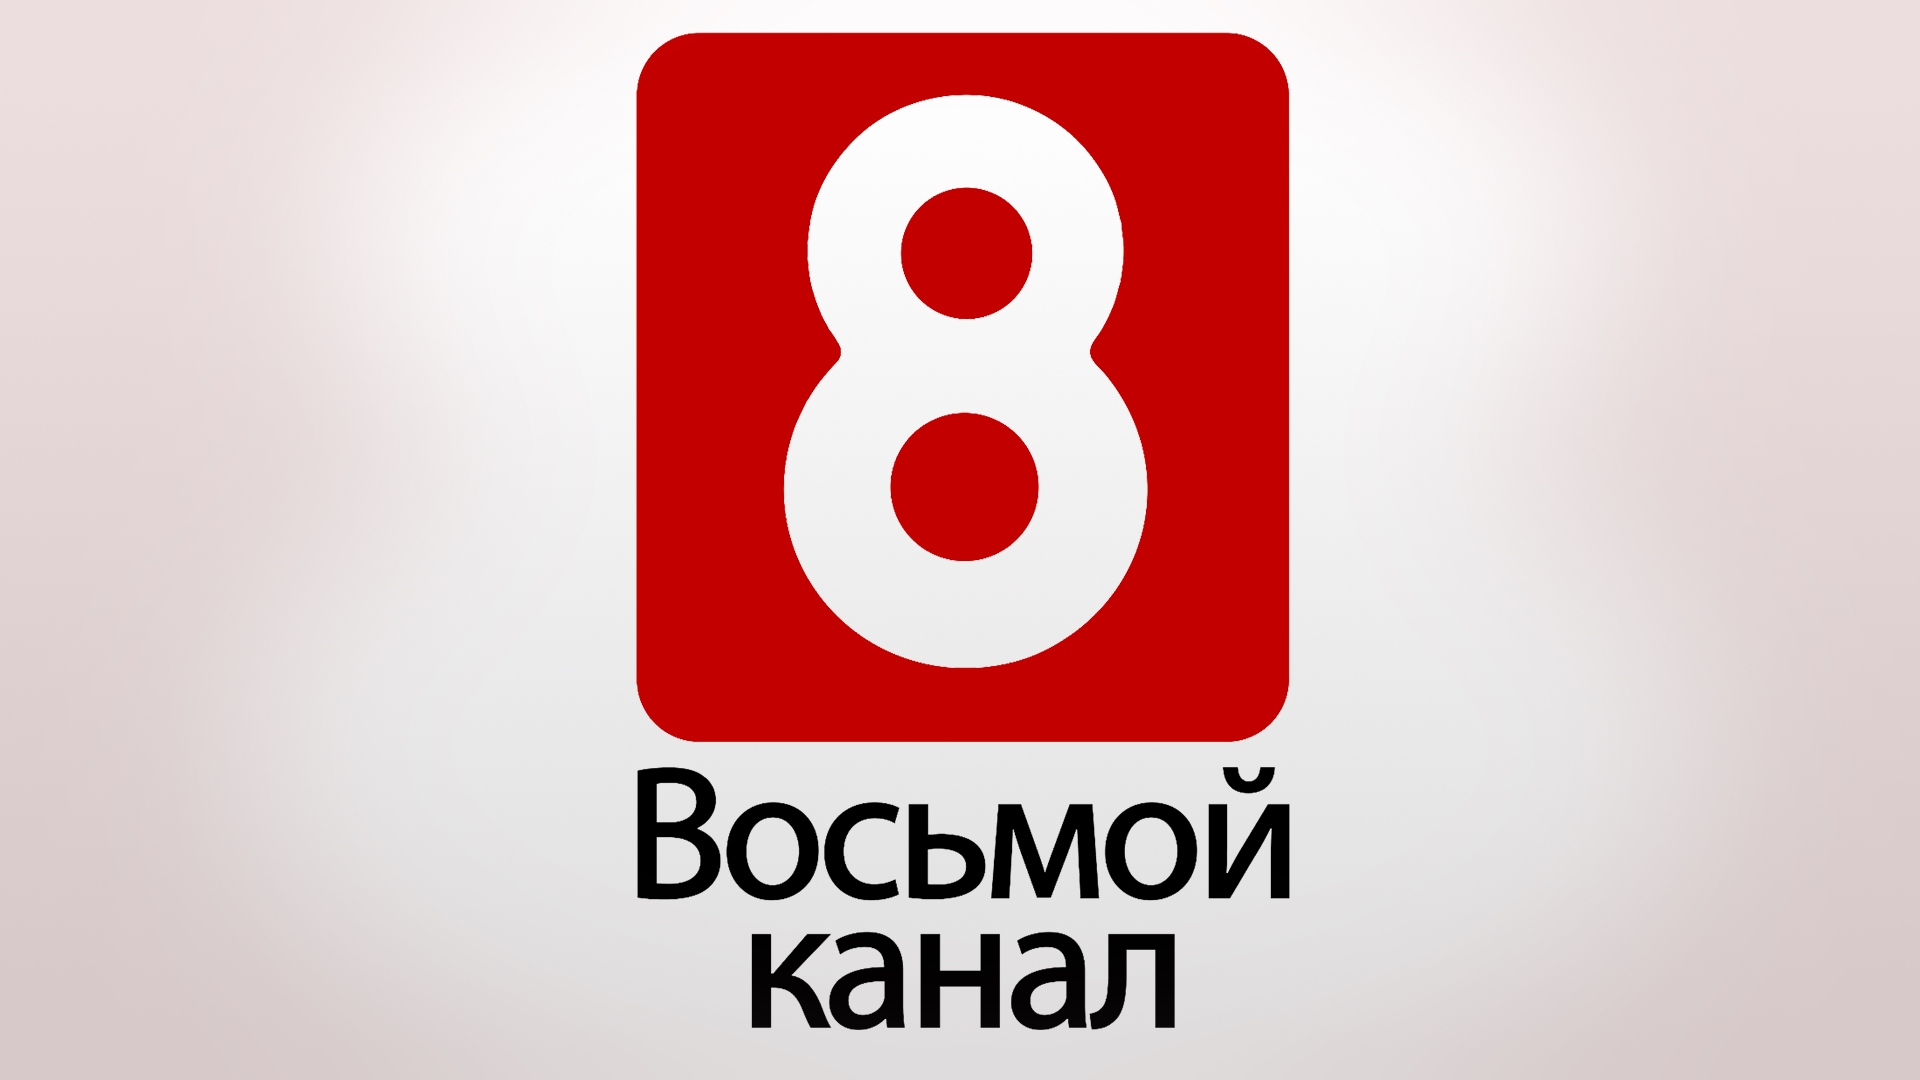 Тг канал 8. 8 Канал. 8 Канал логотип. Телеканал "ТВ-8. 8 Канал Красноярск логотип.